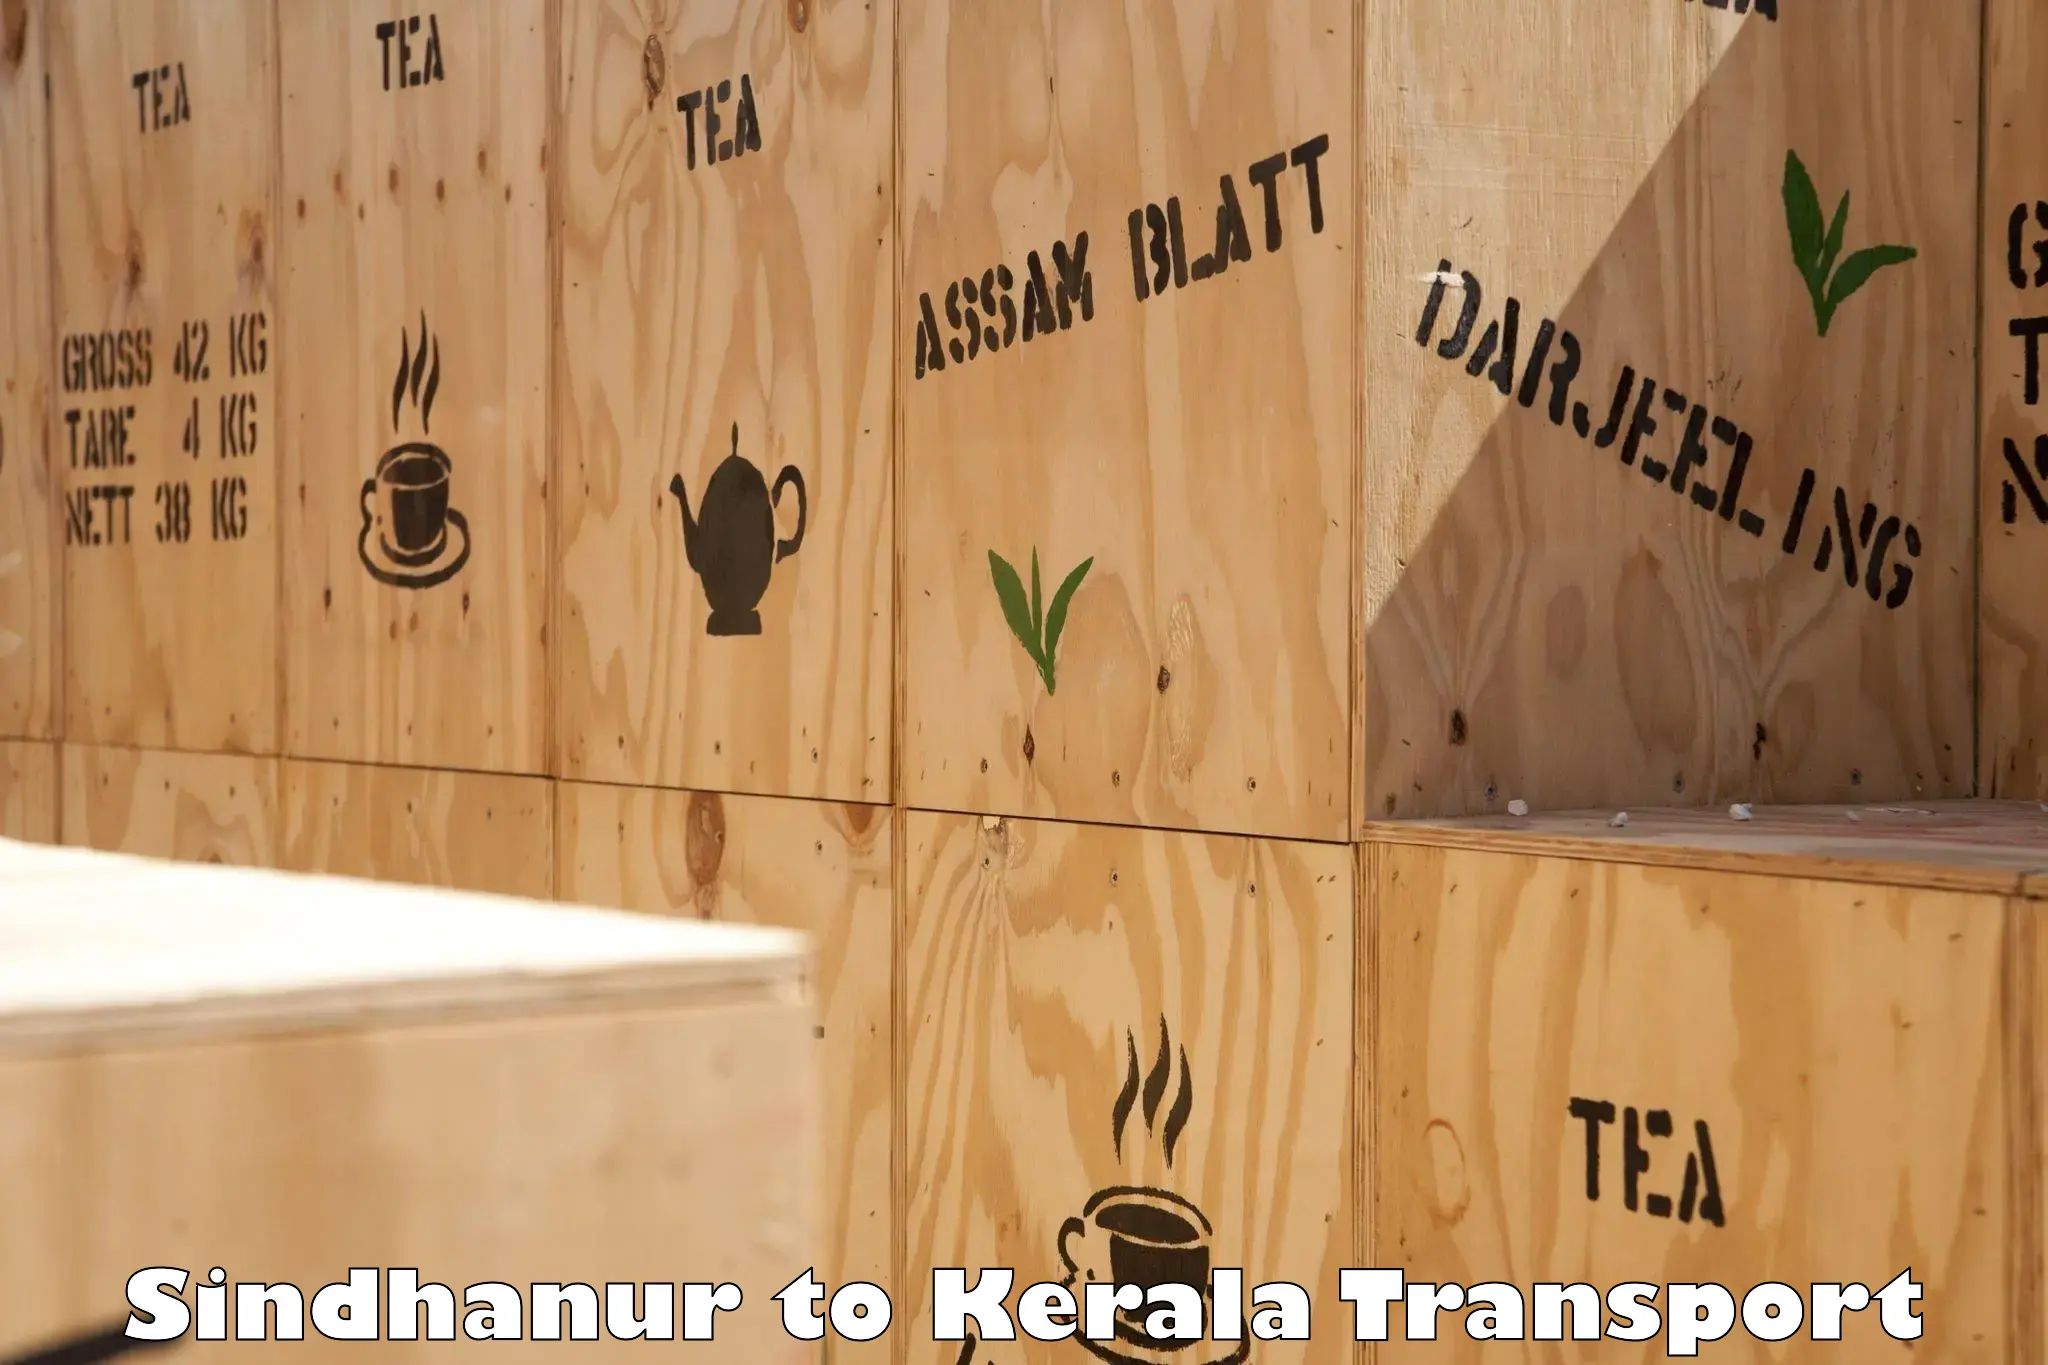 Furniture transport service Sindhanur to Manthuka